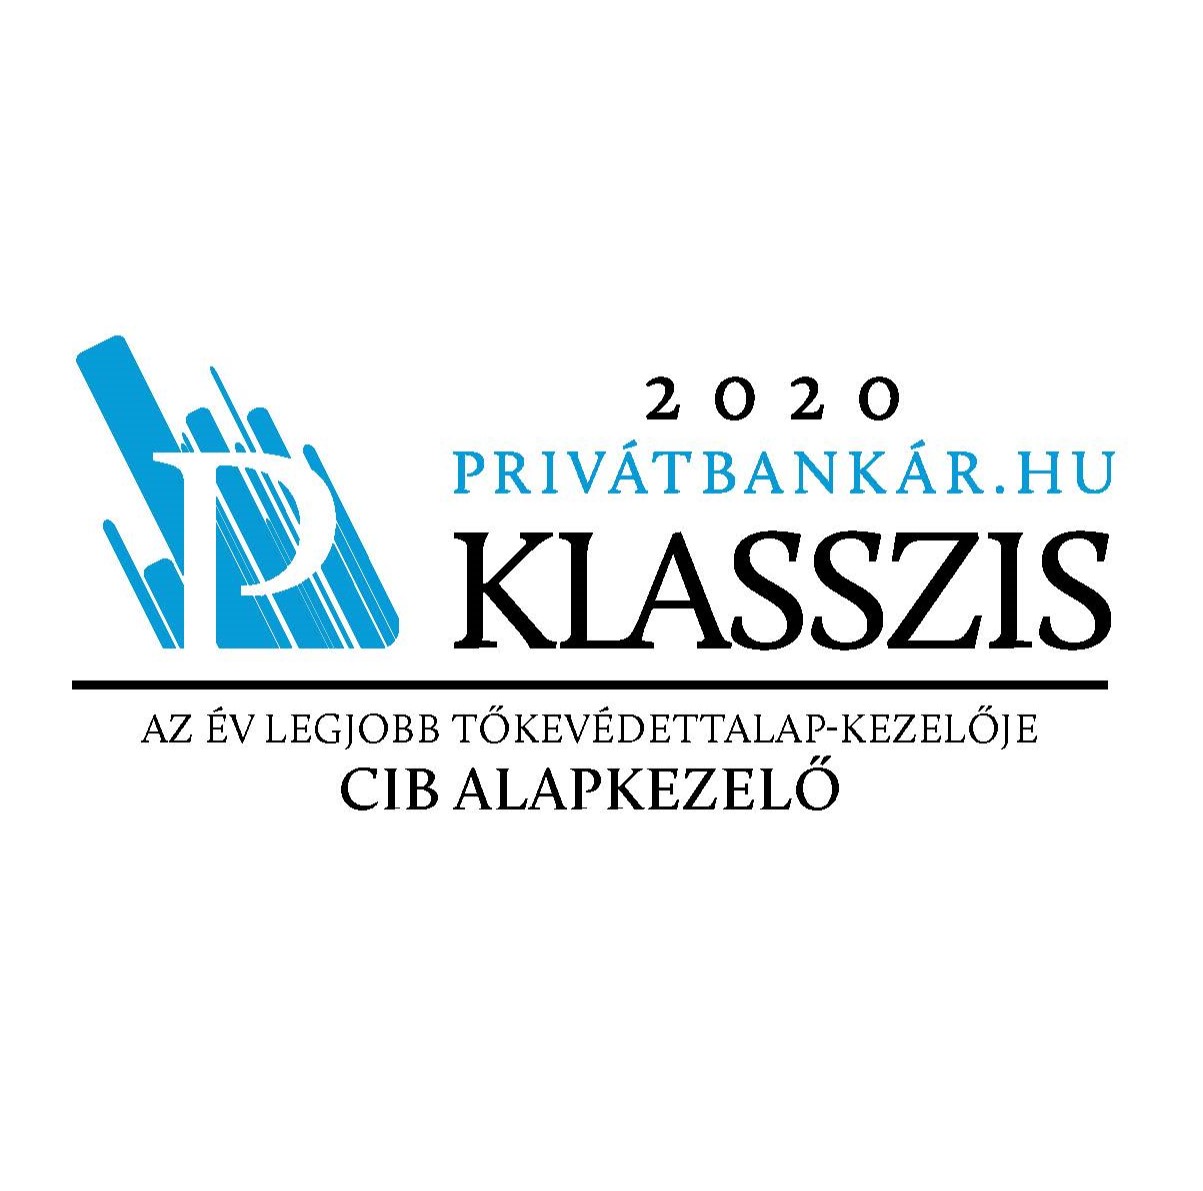 Privátbankár klasszis díj 2020 - az év legjobb tőkevédett alapkezelője